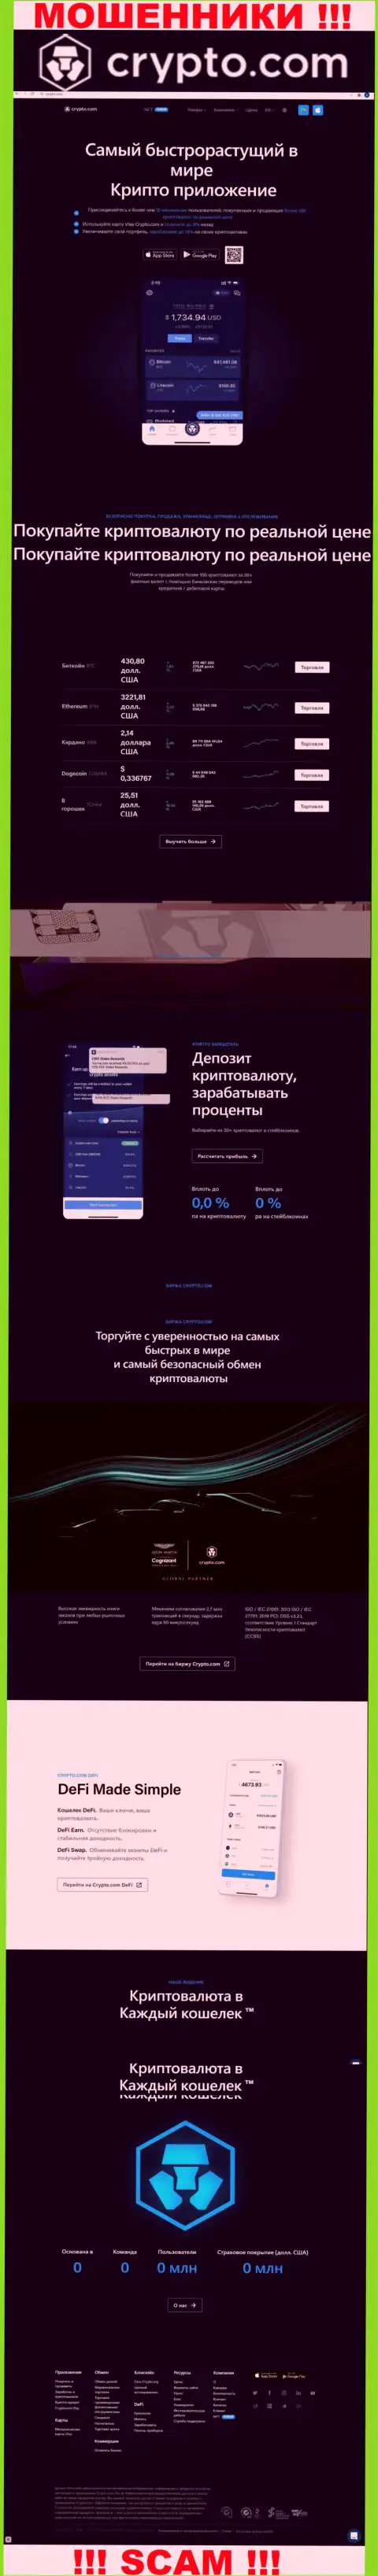 Официальный веб-портал мошенников КриптоКом, переполненный материалами для лохов